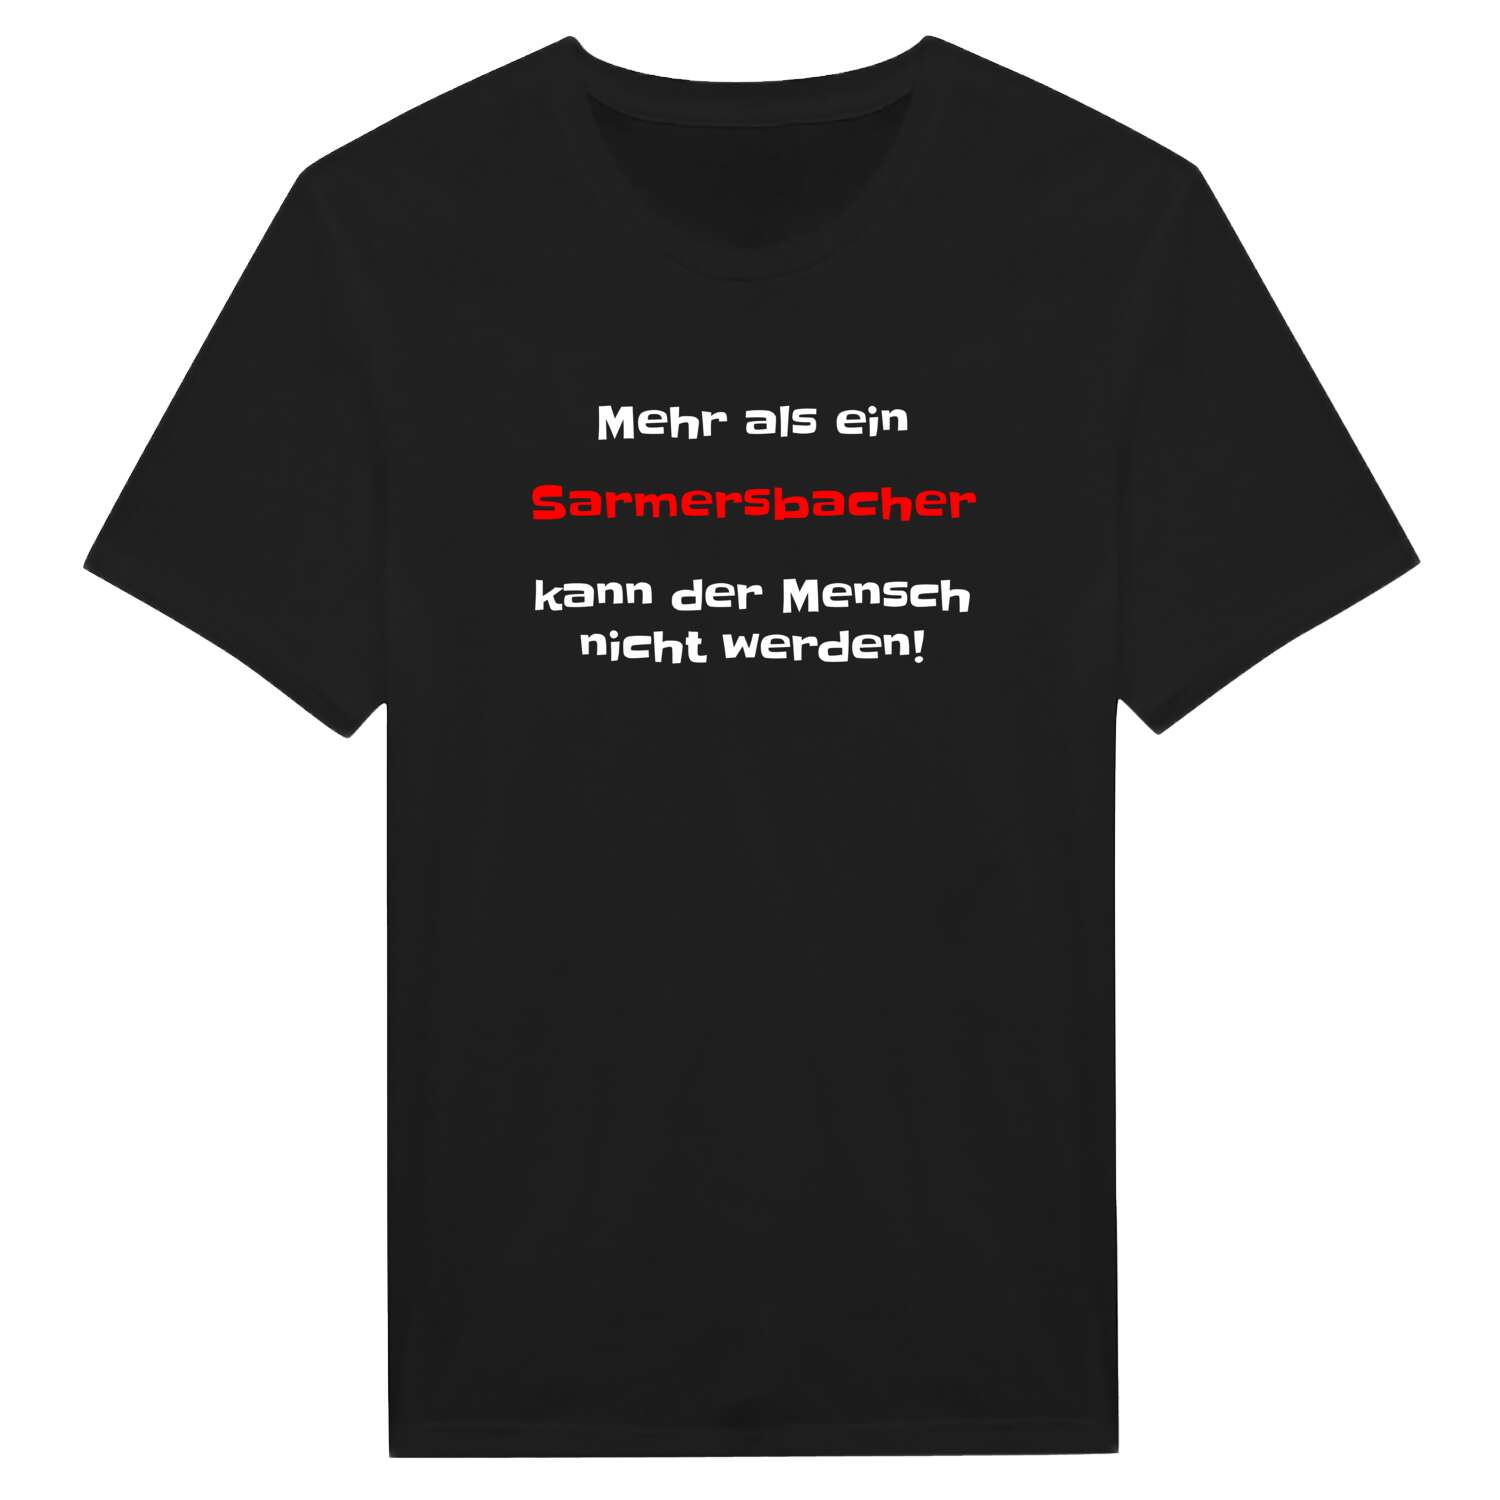 Sarmersbach T-Shirt »Mehr als ein«